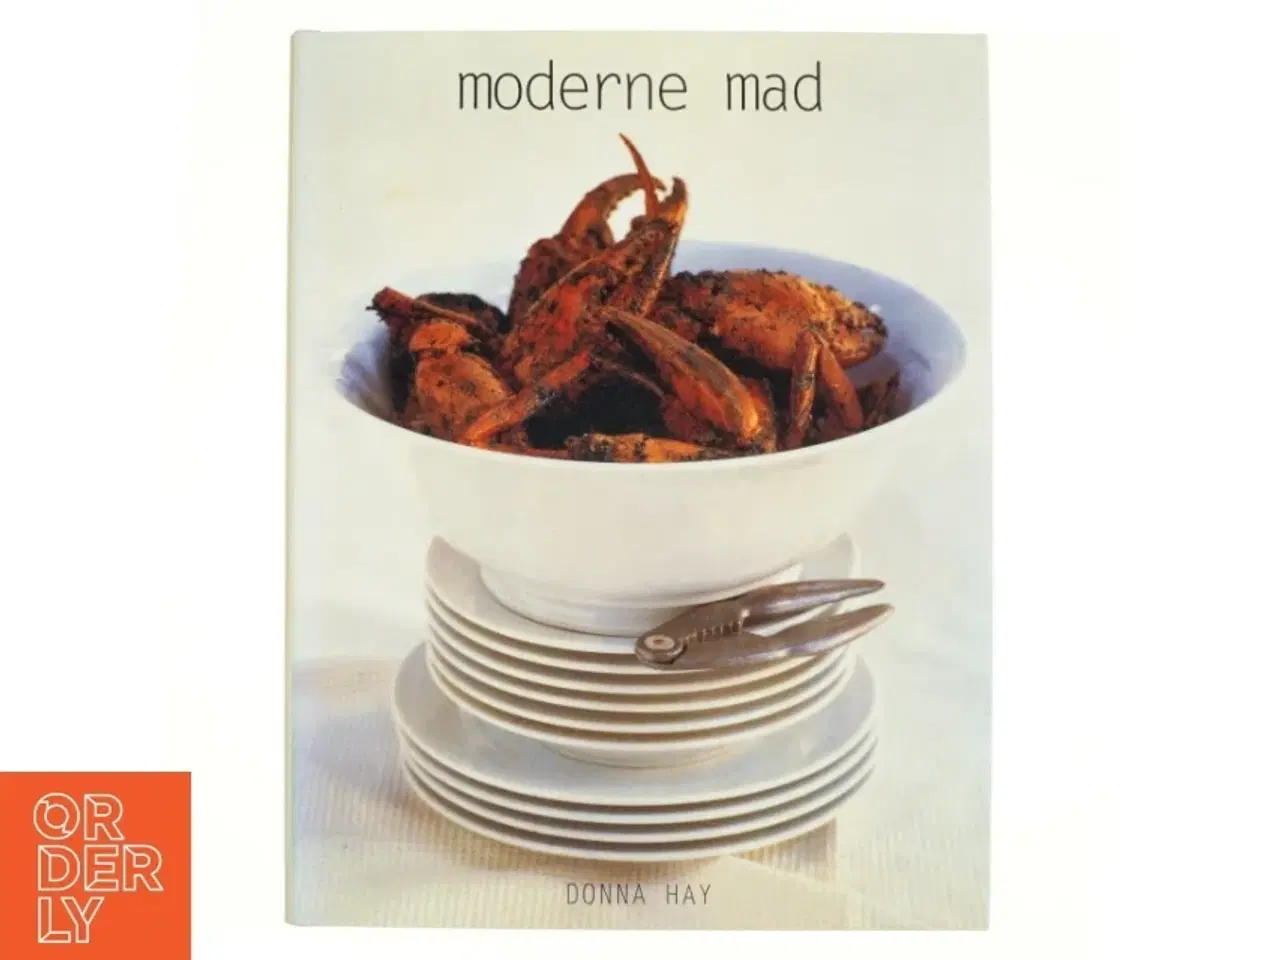 Billede 1 - Moderne mad af Donna Hay, Jytte Brahe Andersen (Bog)